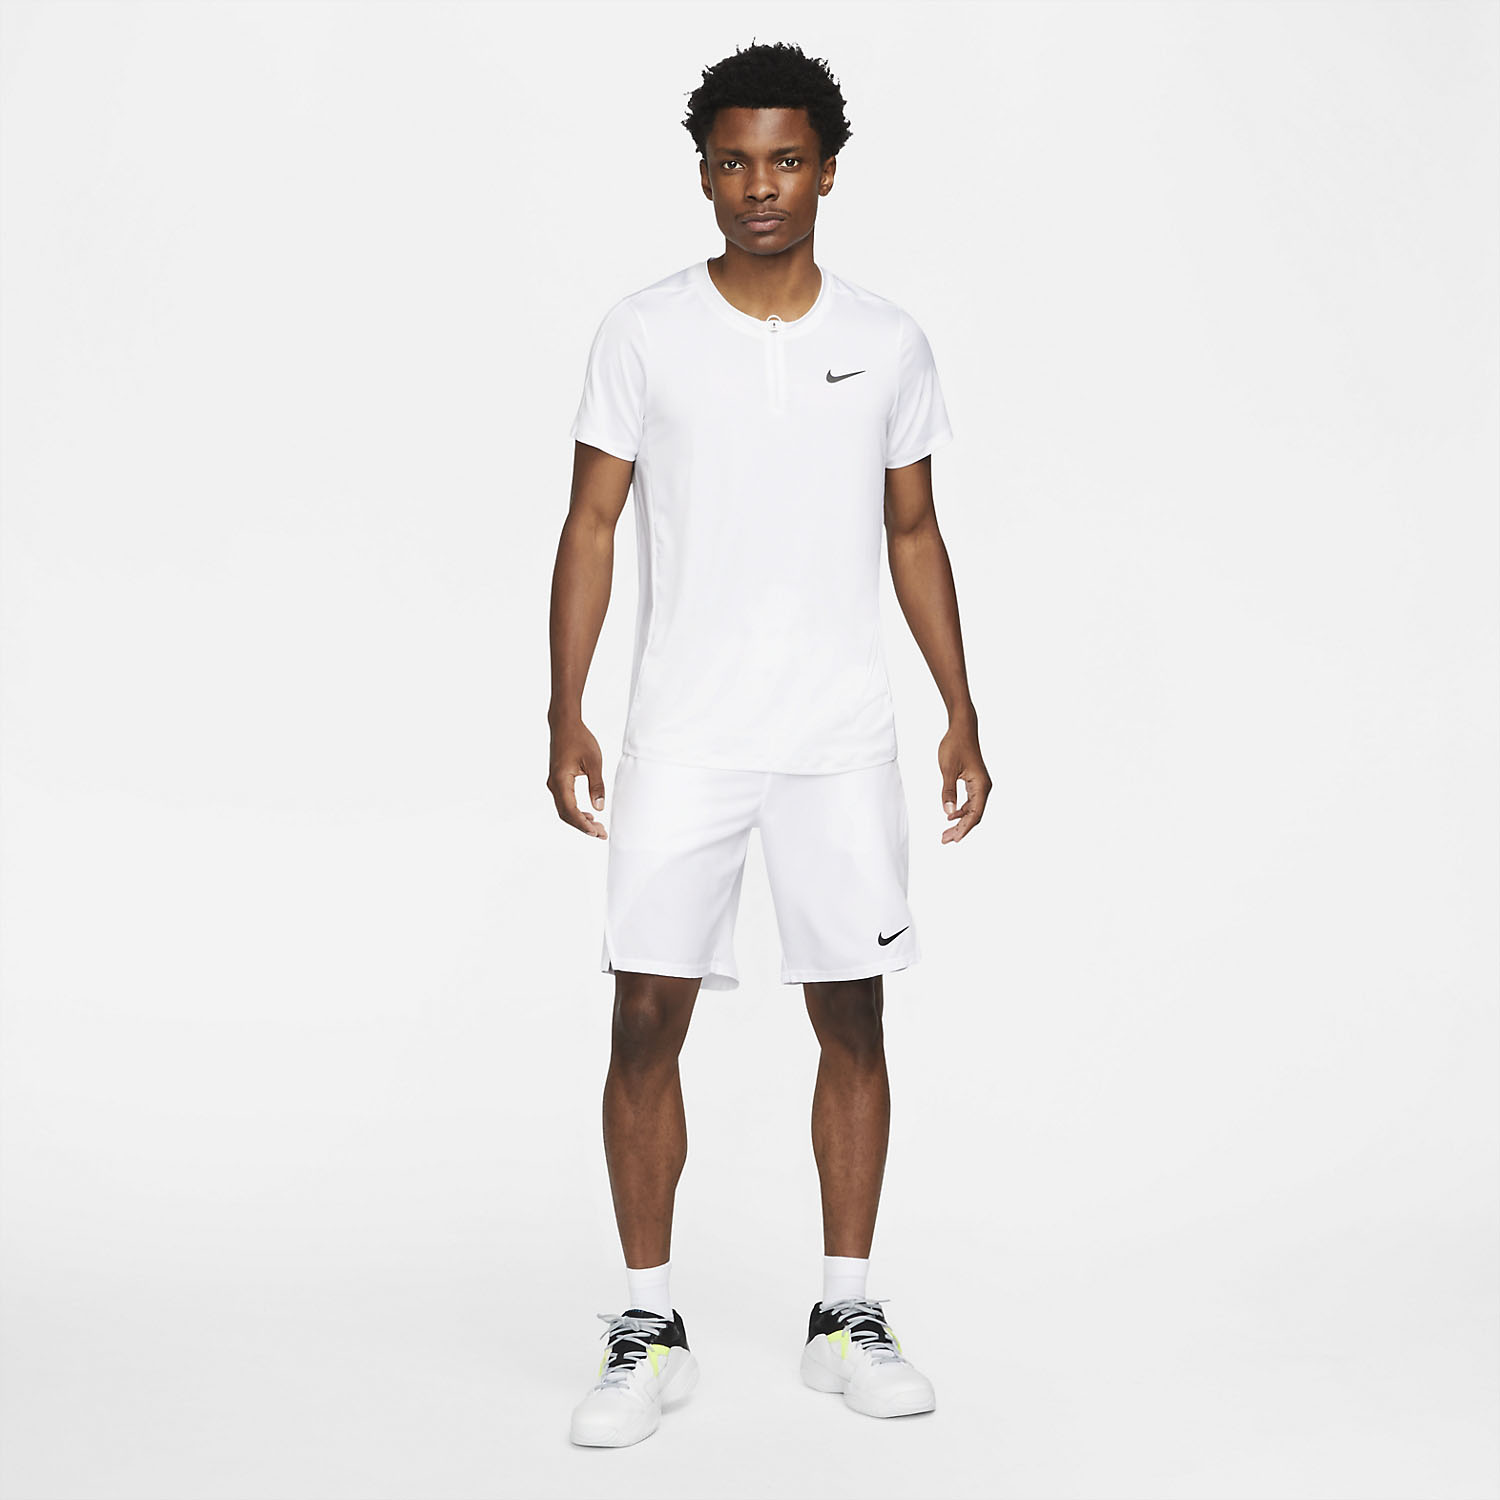 Nike Dri-FIT Advantage Polo - White/Black